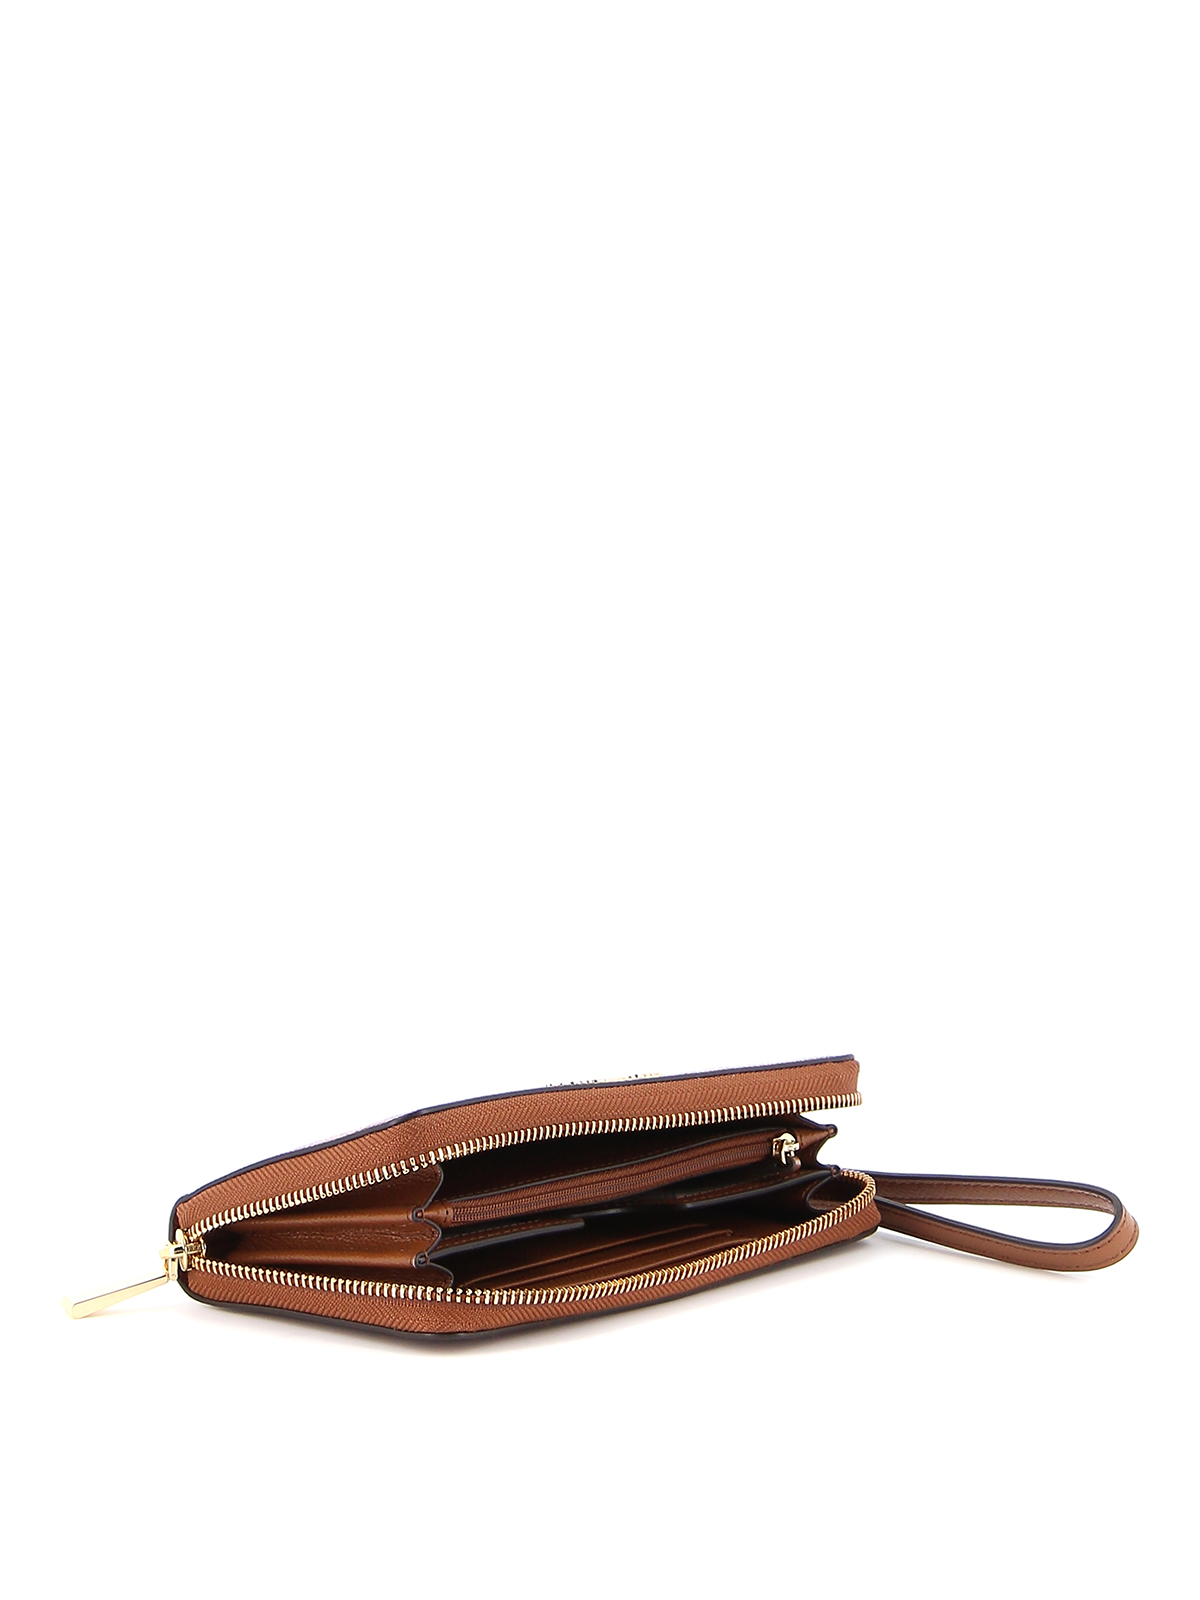 Michael Kors Zip Around Leather Wristlet Wallet